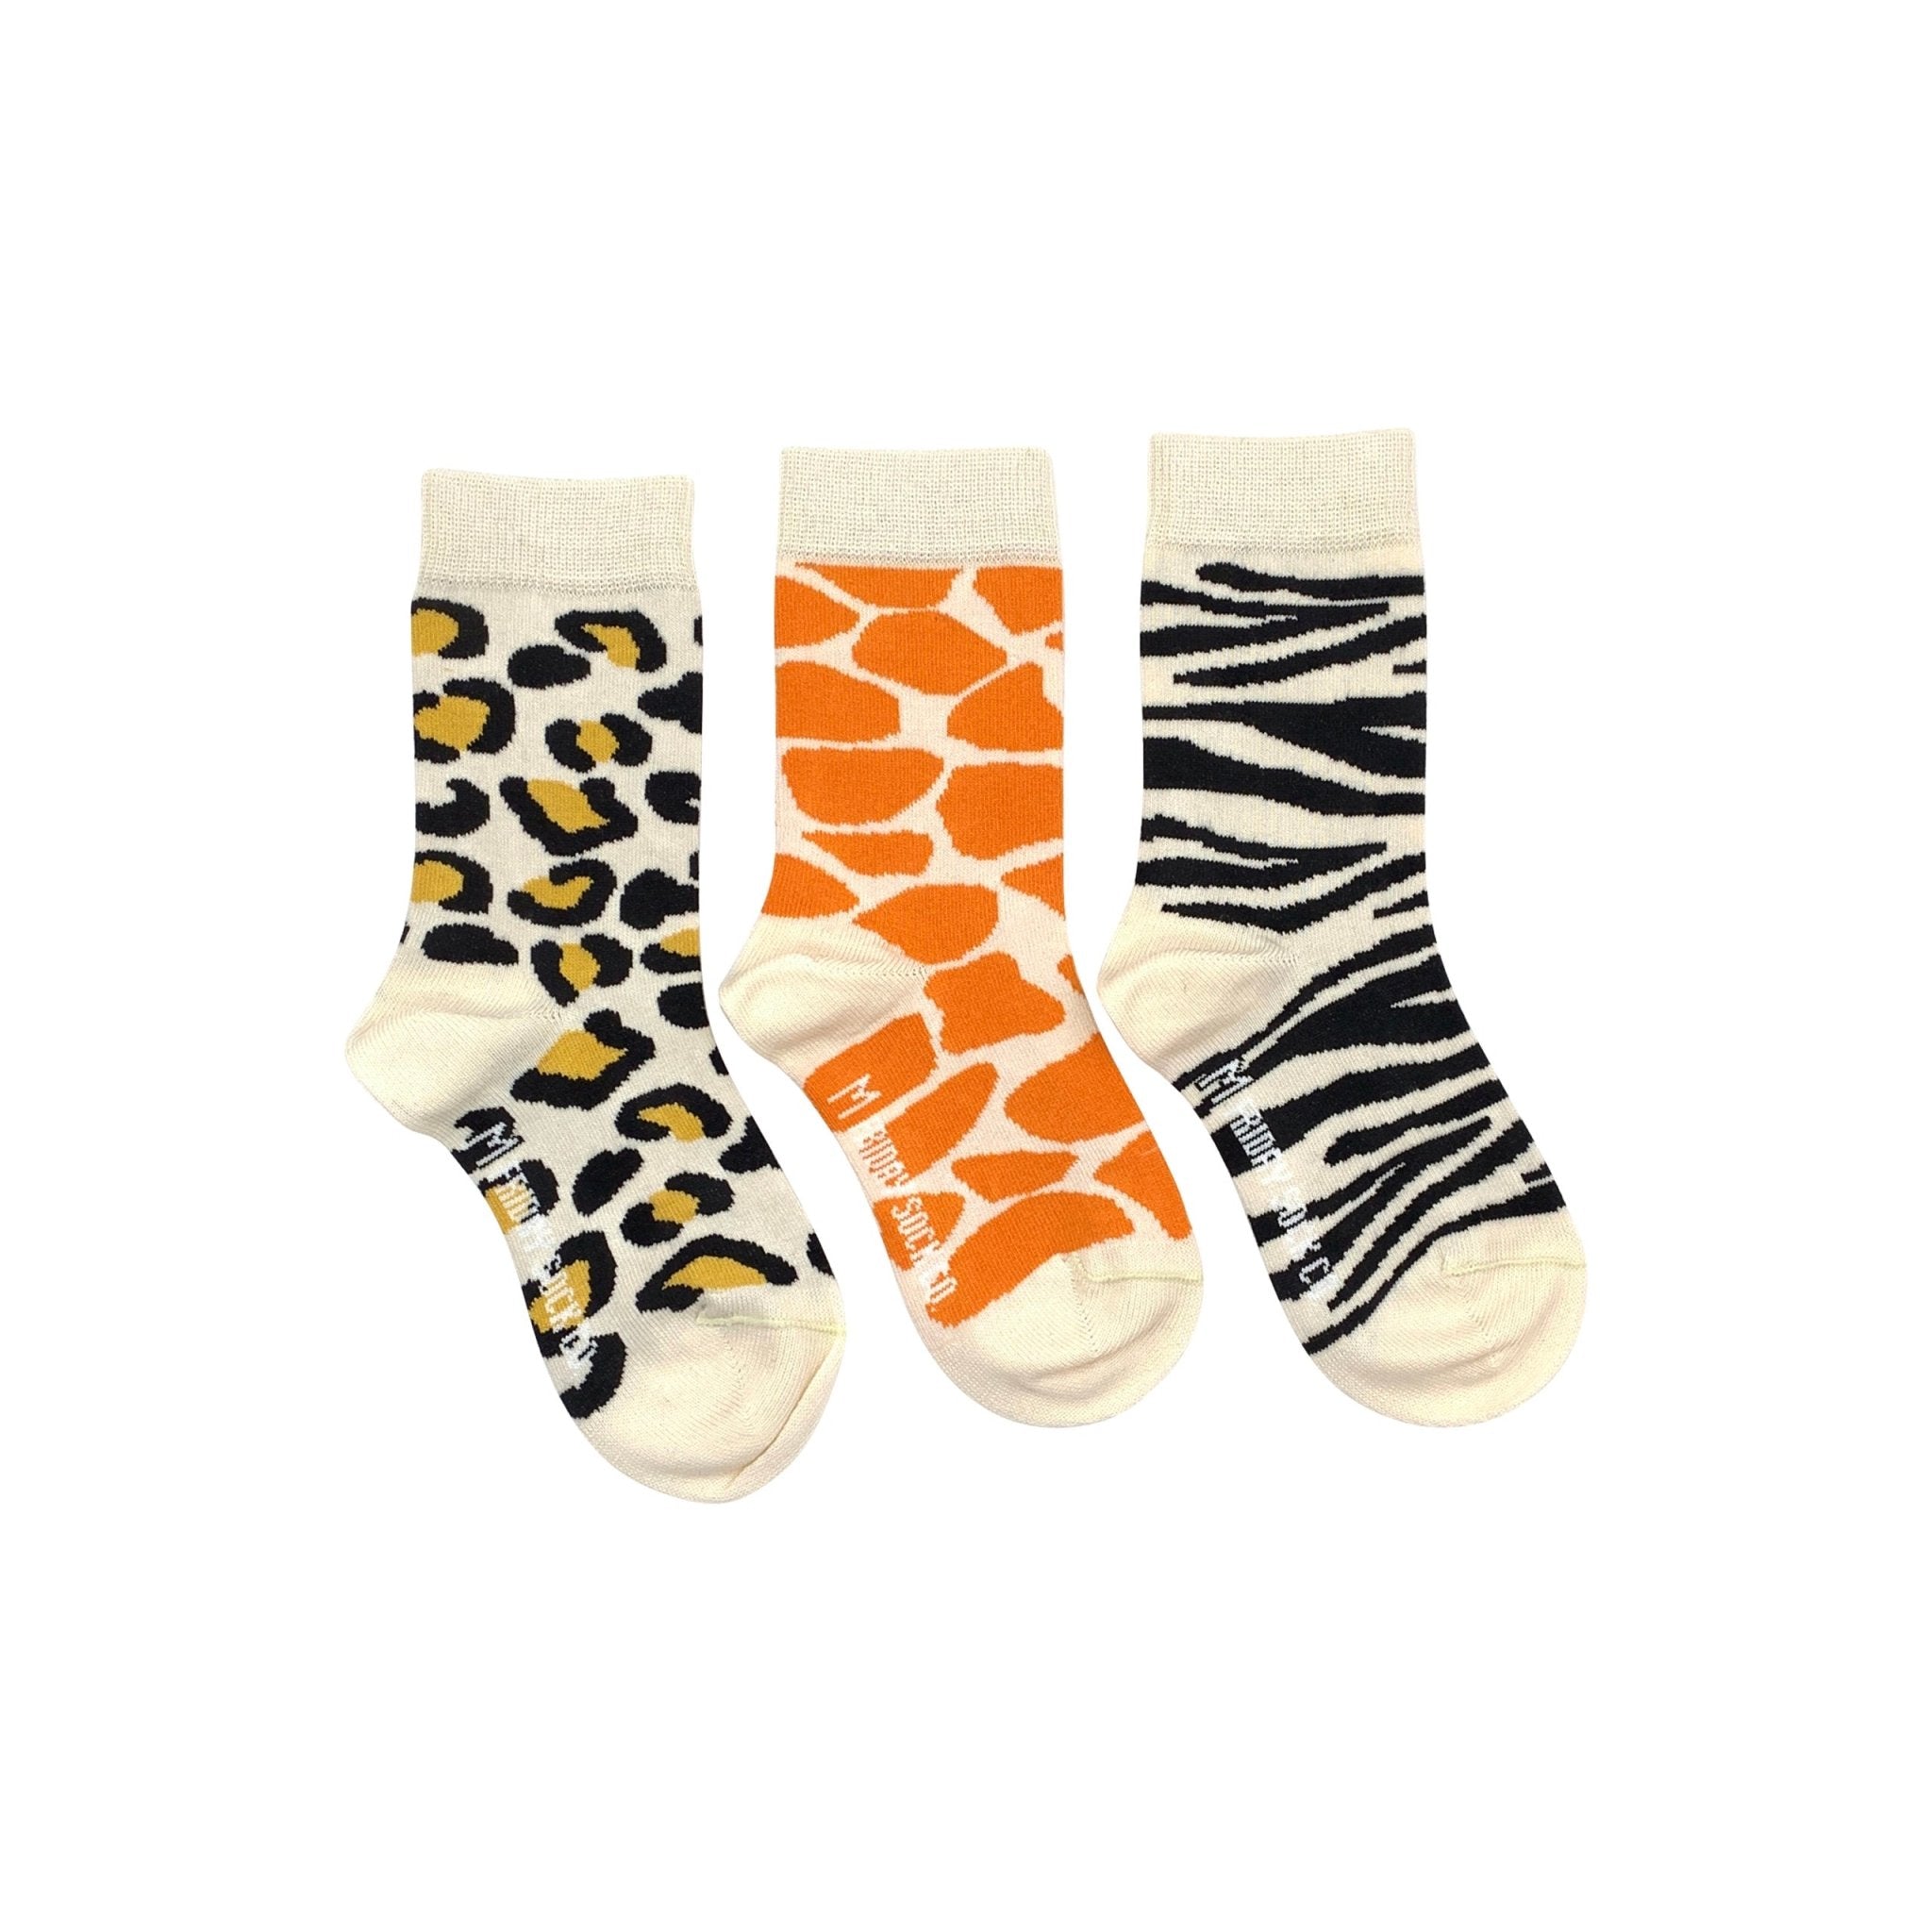 FRIDAY SOCK CO - Kid's Animal Print Socks – Two Giraffes Children's